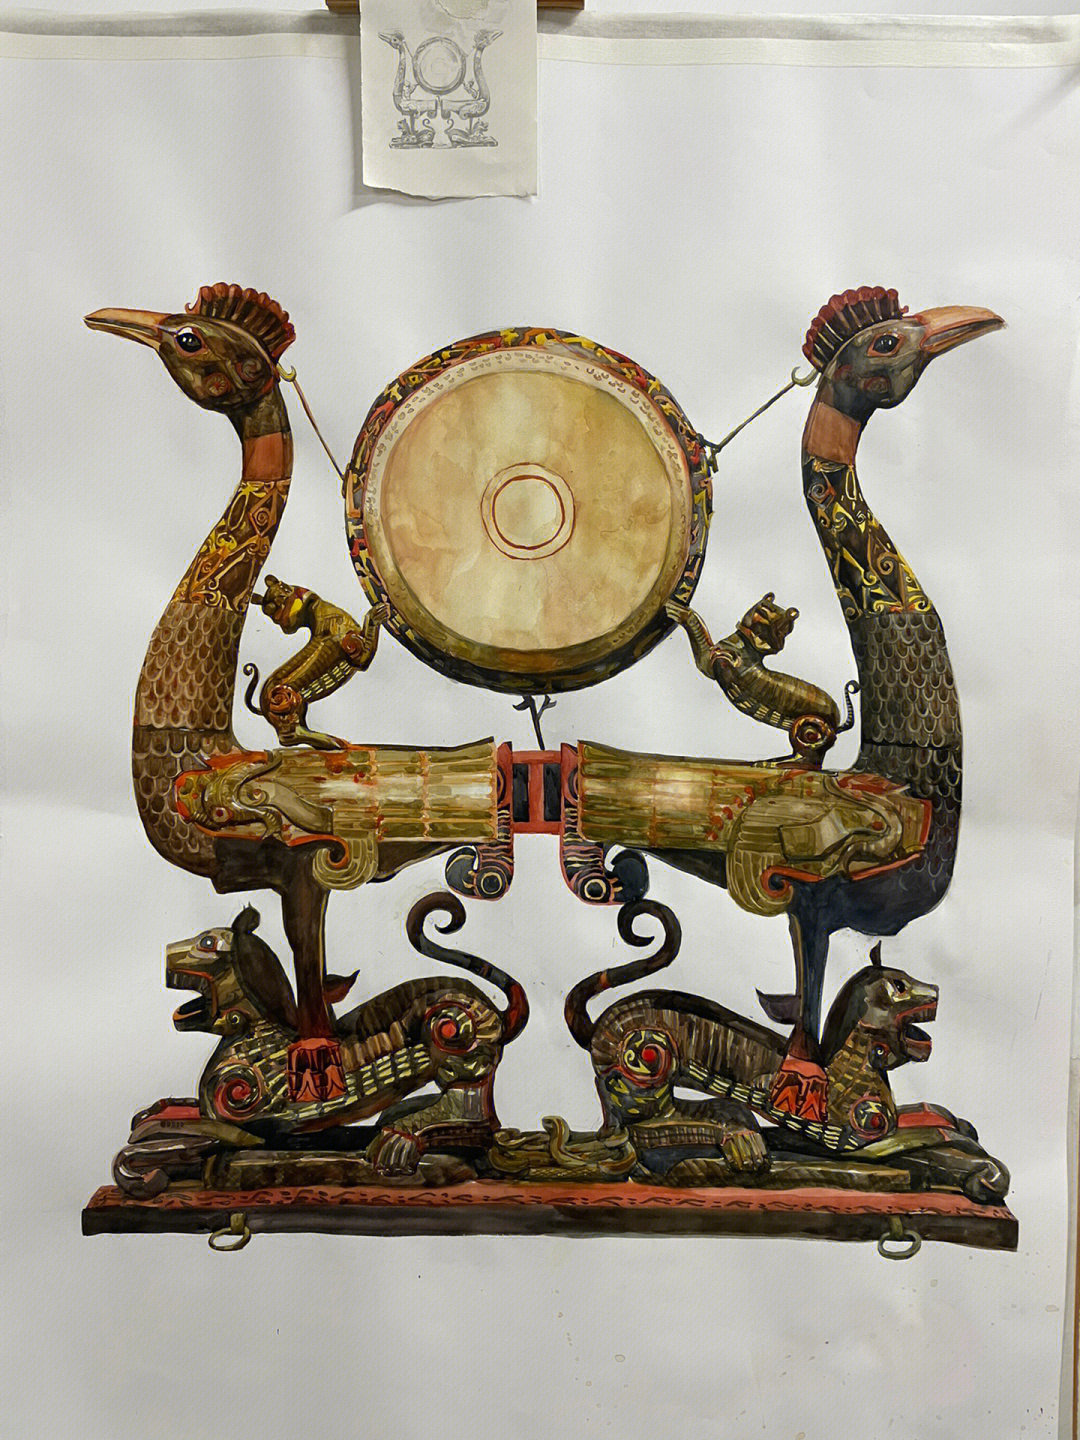 来自湖北博物馆的虎座鸟架鼓